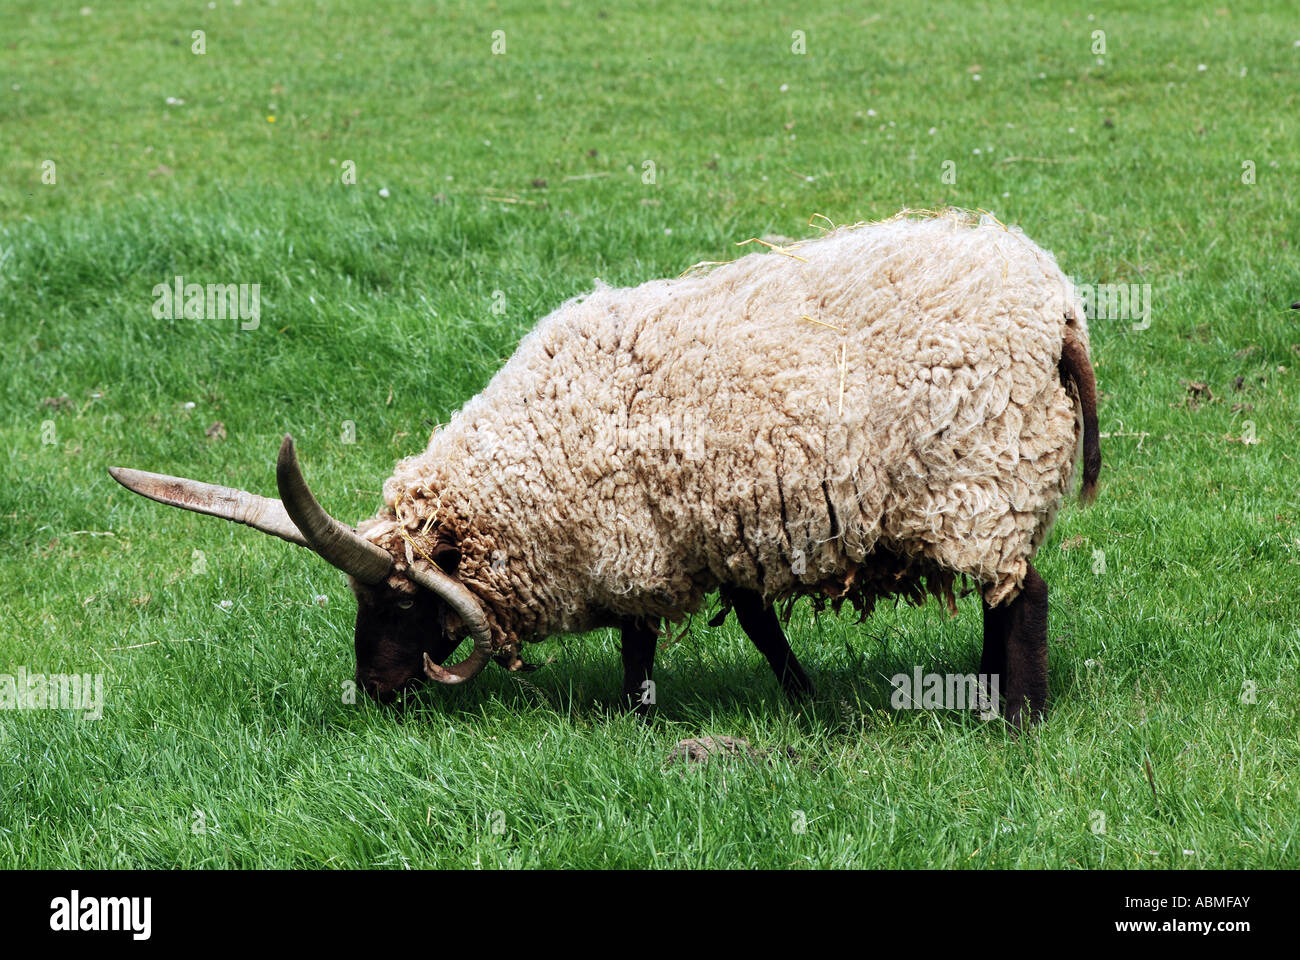 Manx Loghtan mouton à Cotswold Farm Park, Gloucestershire, England, UK Banque D'Images